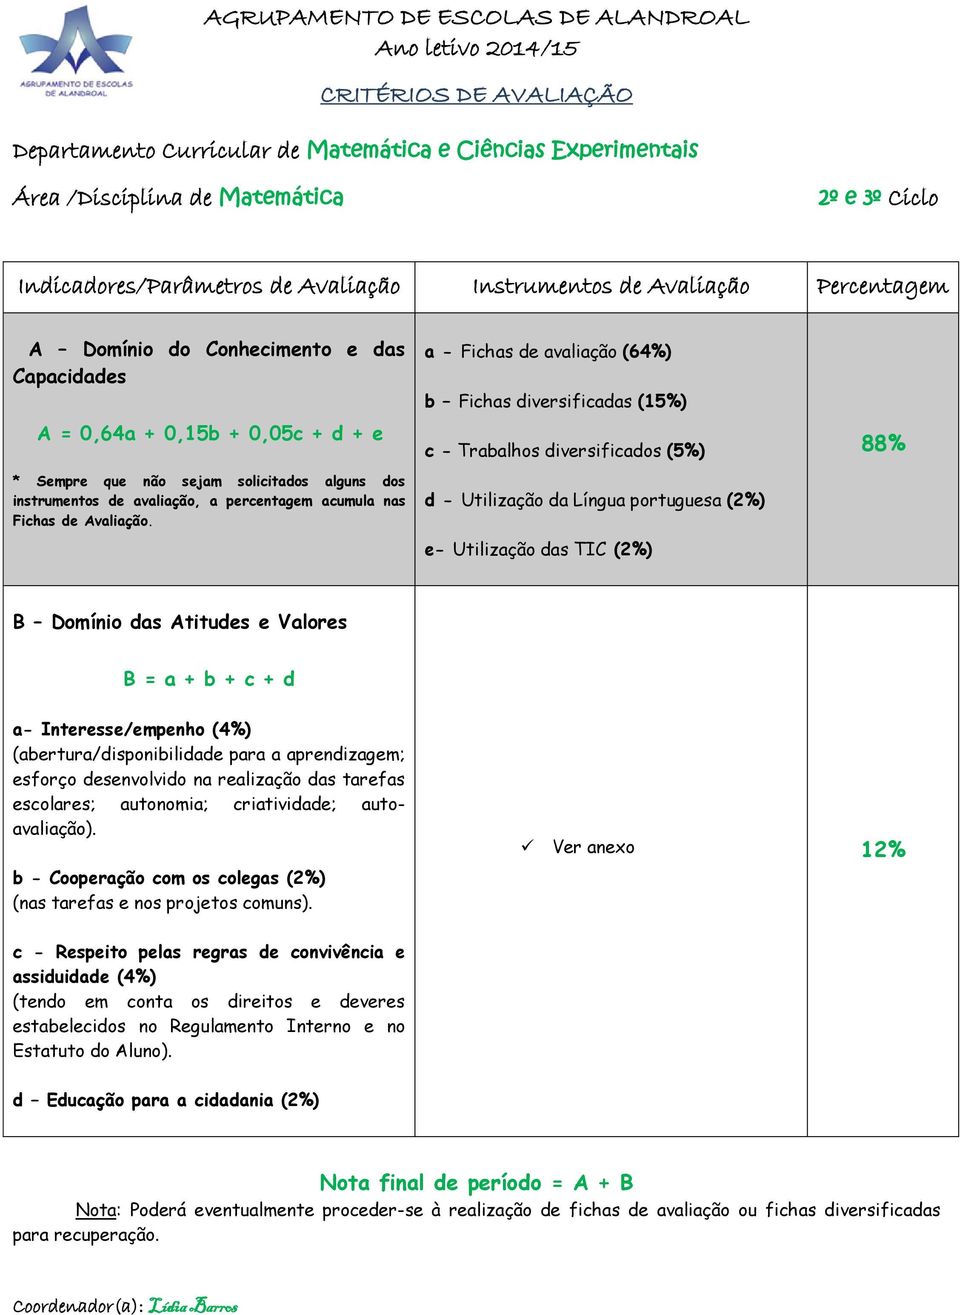 instrumentos de avaliação, a percentagem acumula nas Fichas de Avaliação.